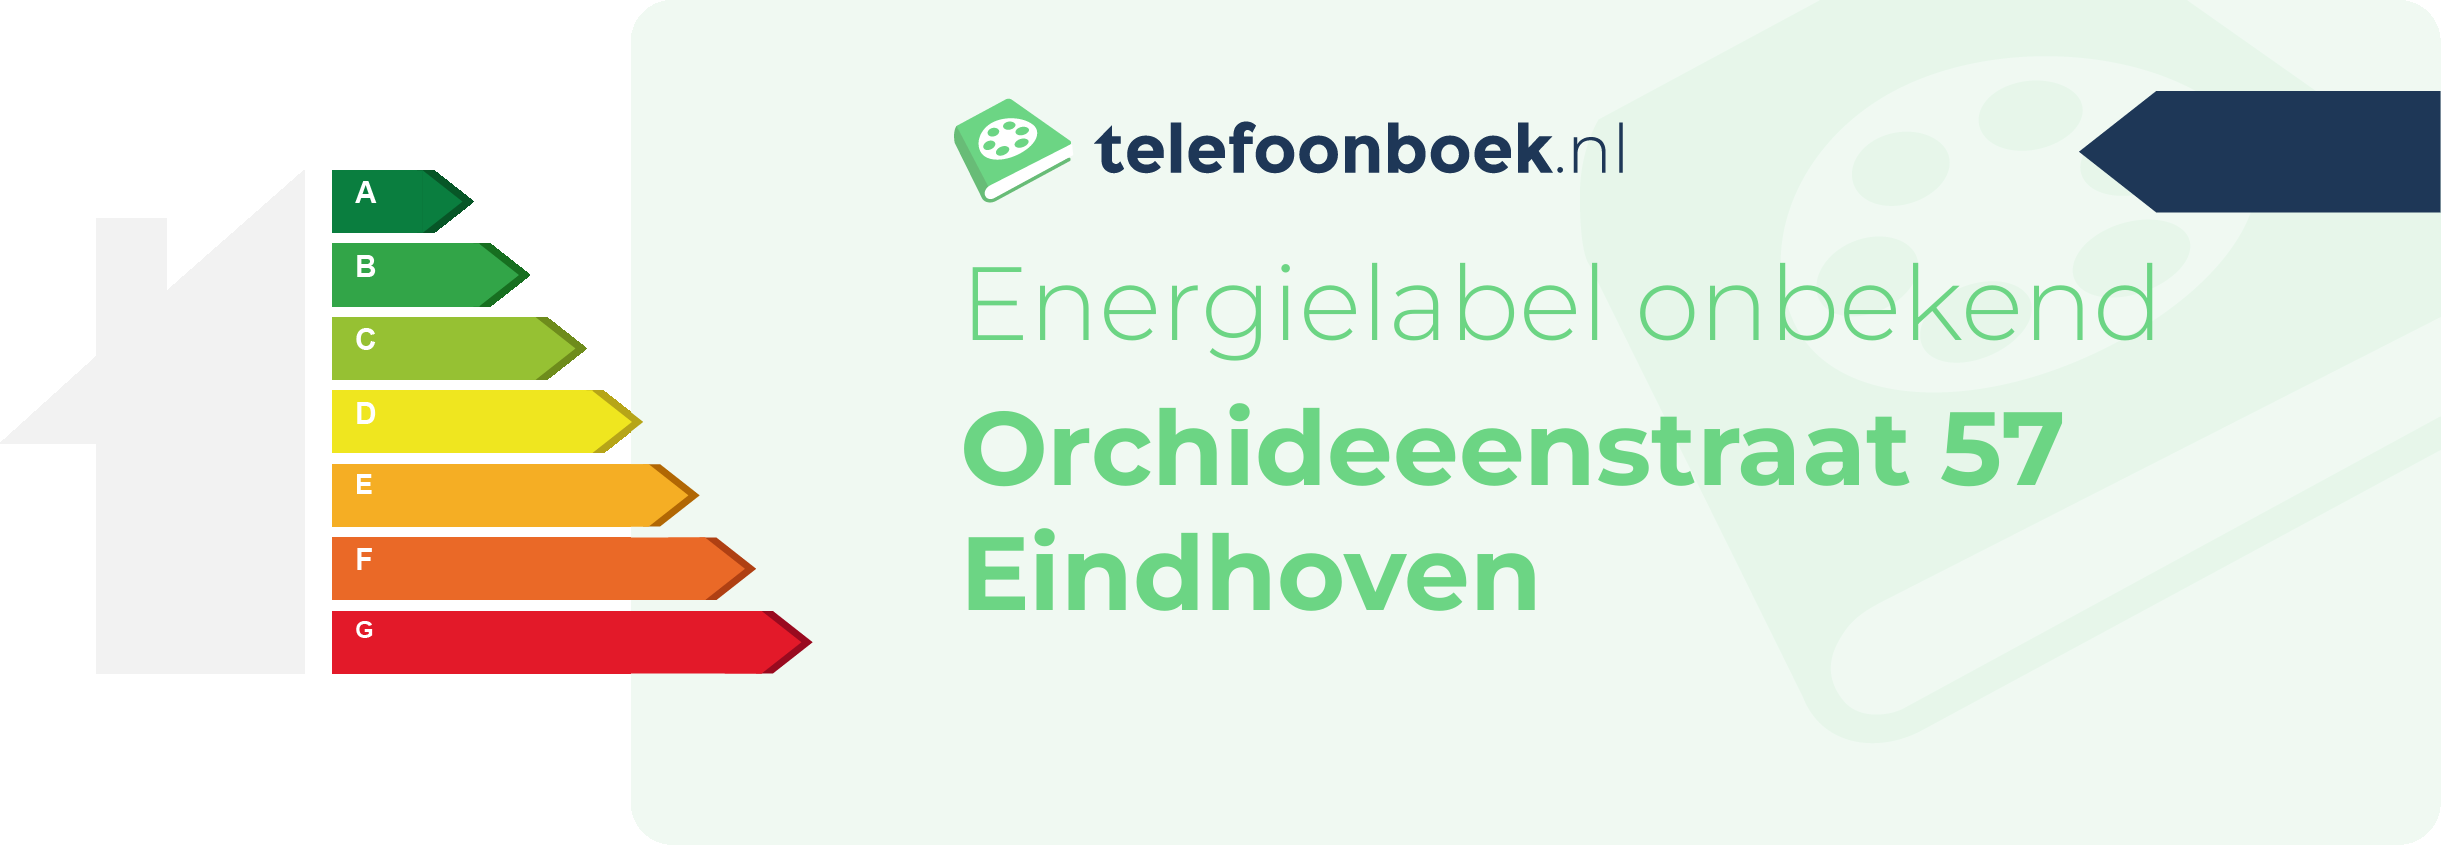 Energielabel Orchideeenstraat 57 Eindhoven